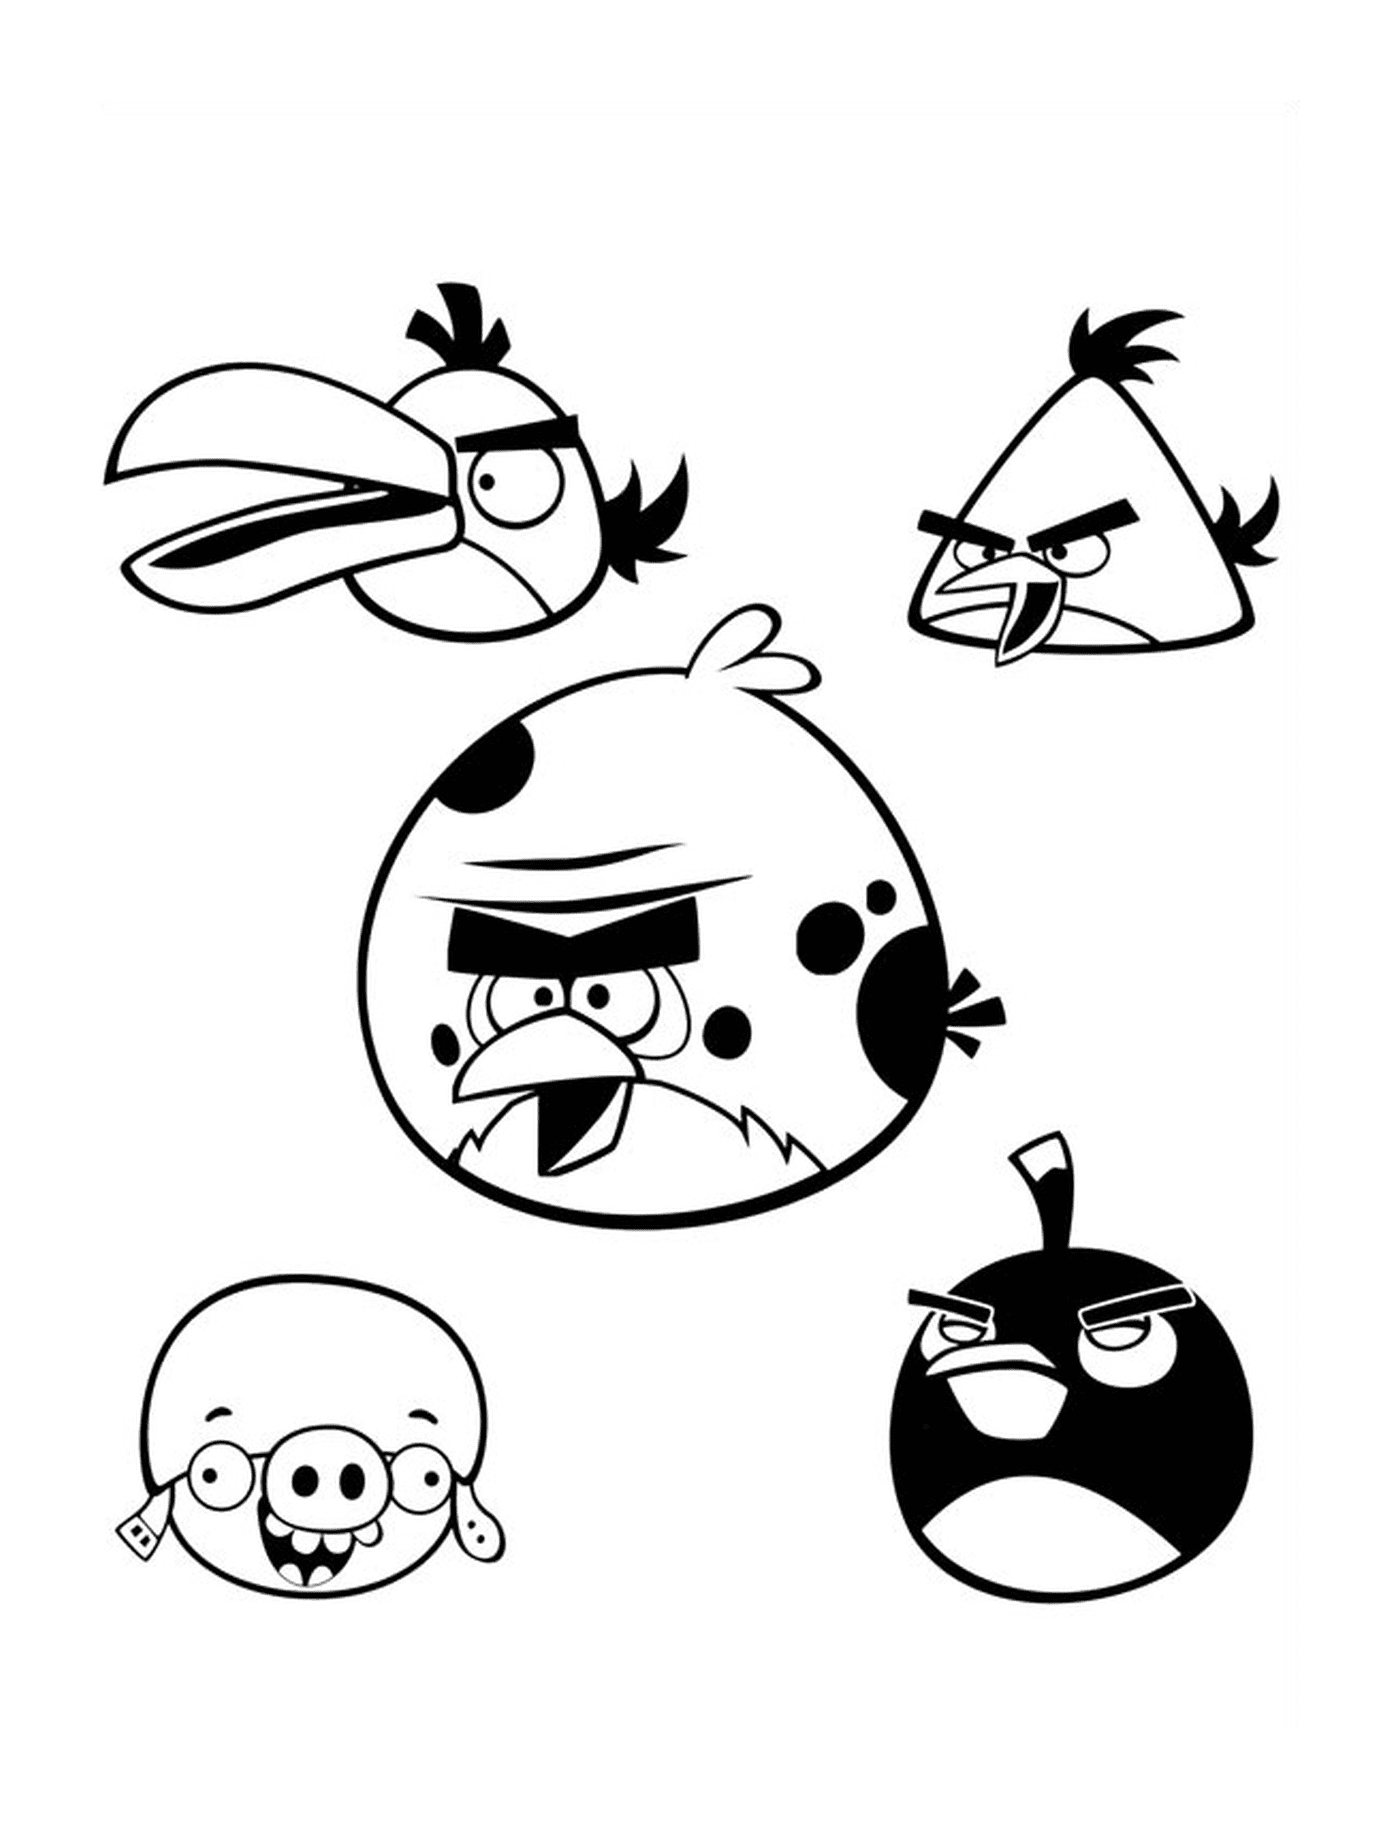  Equipe de cinco Angry Birds no ar 